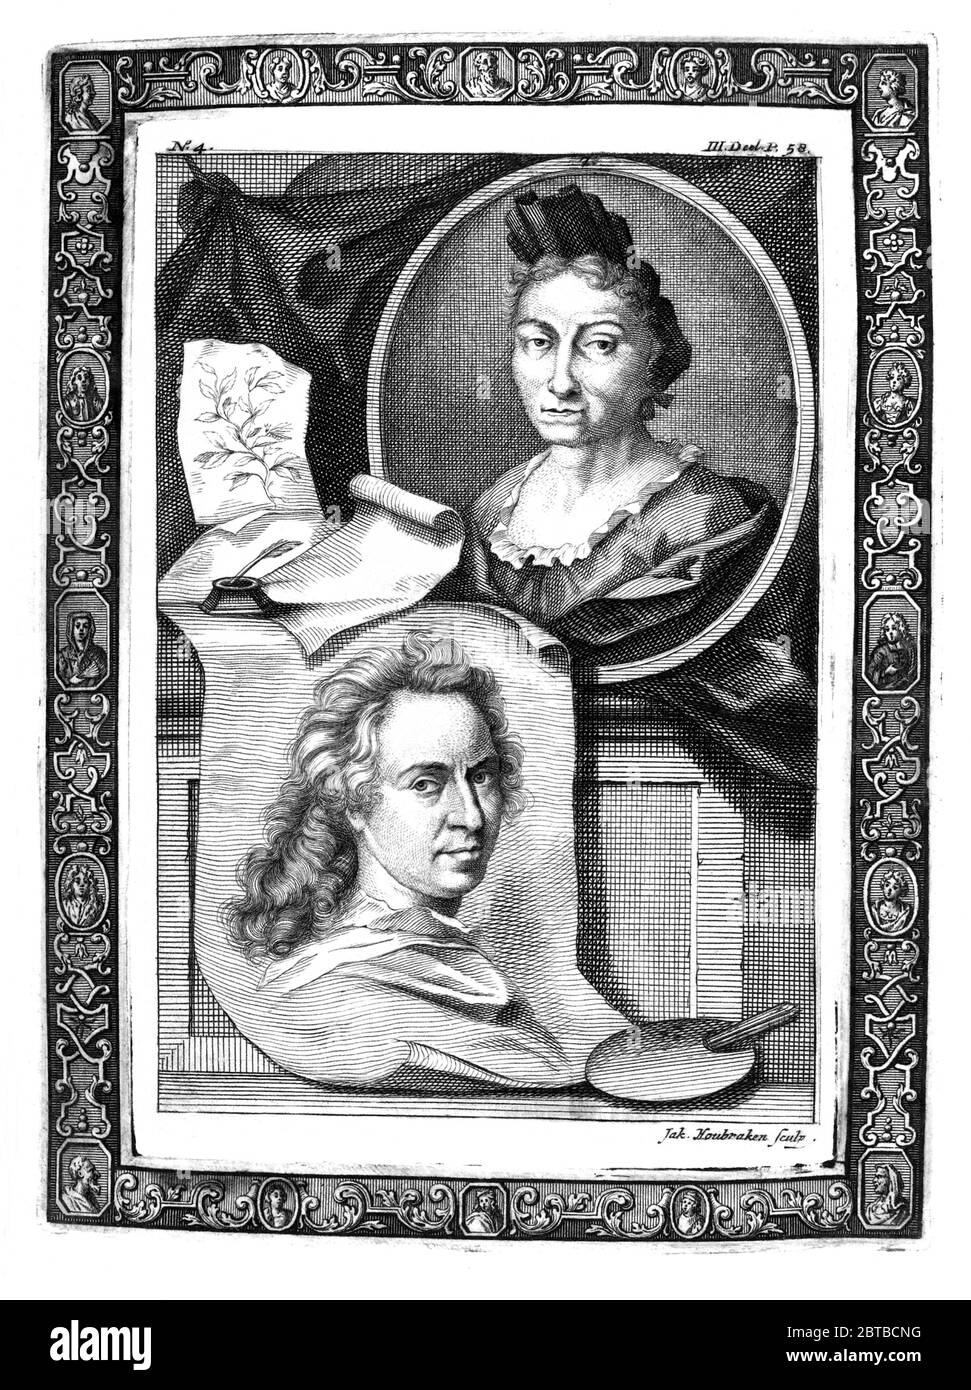 1729, DEUTSCHLAND : die deutsche Naturwissenschaftlerin Malerin, wissenschaftliche Illustratorin und Biologin MARIA SIBYLLA MERIAN ( 1647 - 1717 ). Sybylla's Vater war der Schweizer Kupferstecher und Pubblisher Matthäus Merian (Matthäus, 1593 - 1650) der Ältere. Porträt von Jacobus Houbraken ( 1698 - 1780 ), nach Georg Gsell, mit dem Porträt (unten) des niederländischen Porträtisten David van der Plas ( 1647 - 1704 ). - SYBILLA - GESCHICHTE - foto storica storiche - Portrait - ritratto - NATURALISTA - NATURALIST - SCIENZA - WISSENSCHAFT - BIOLOGIE - BIOLOGIA - illustrate - illustraore - Illustrator - Frau Maler - pittrice Stockfoto